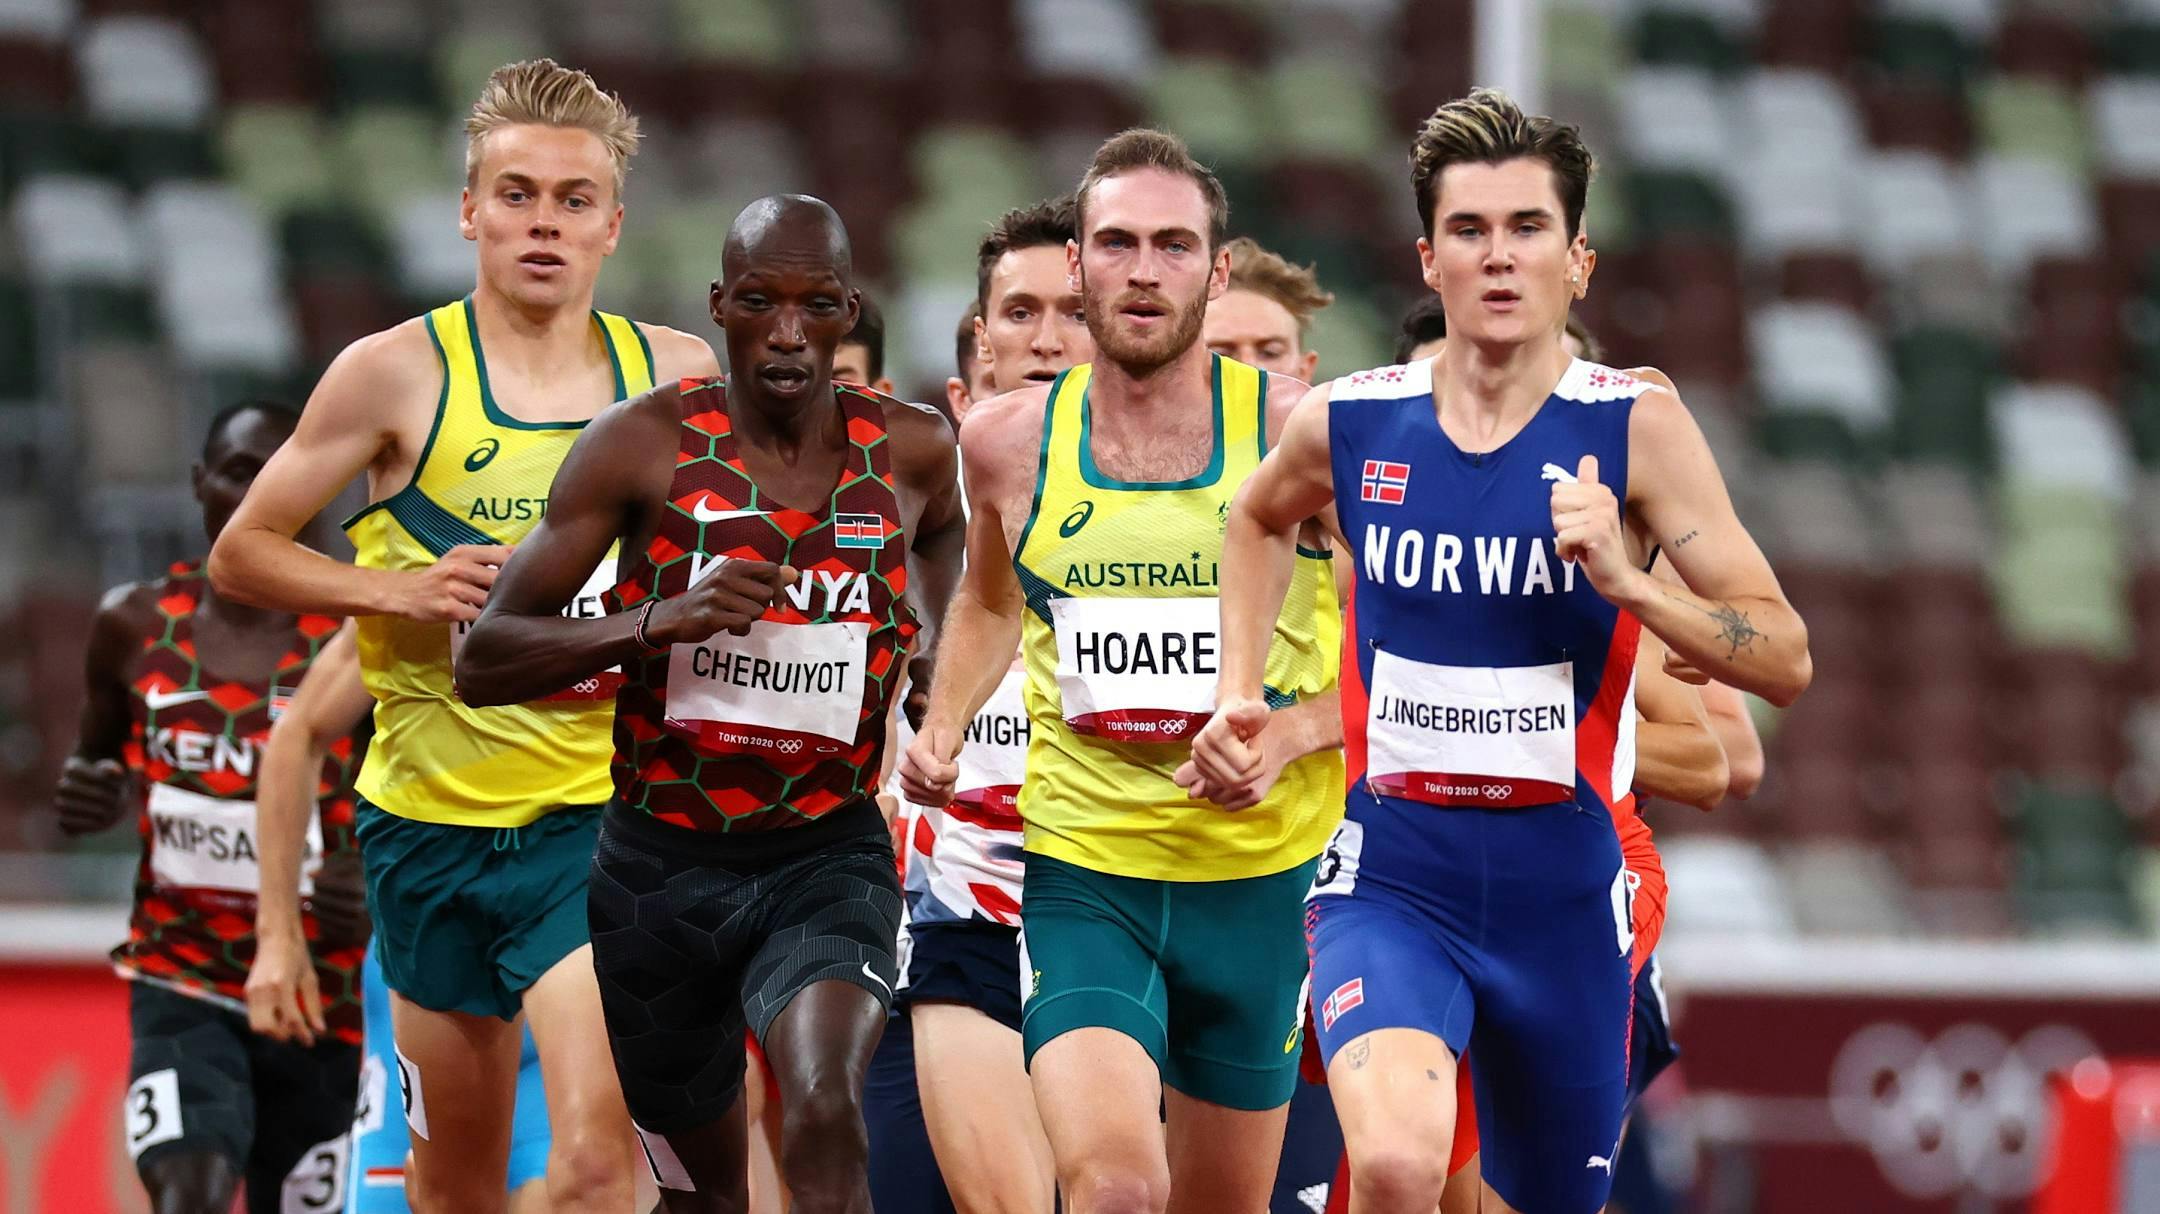 Παγκόσμιο πρωτάθλημα: Τρεις χρυσοί Ολυμπιονίκες και πολλοί ρέκορντμαν στον τελικό των 5.000μ. ανδρών